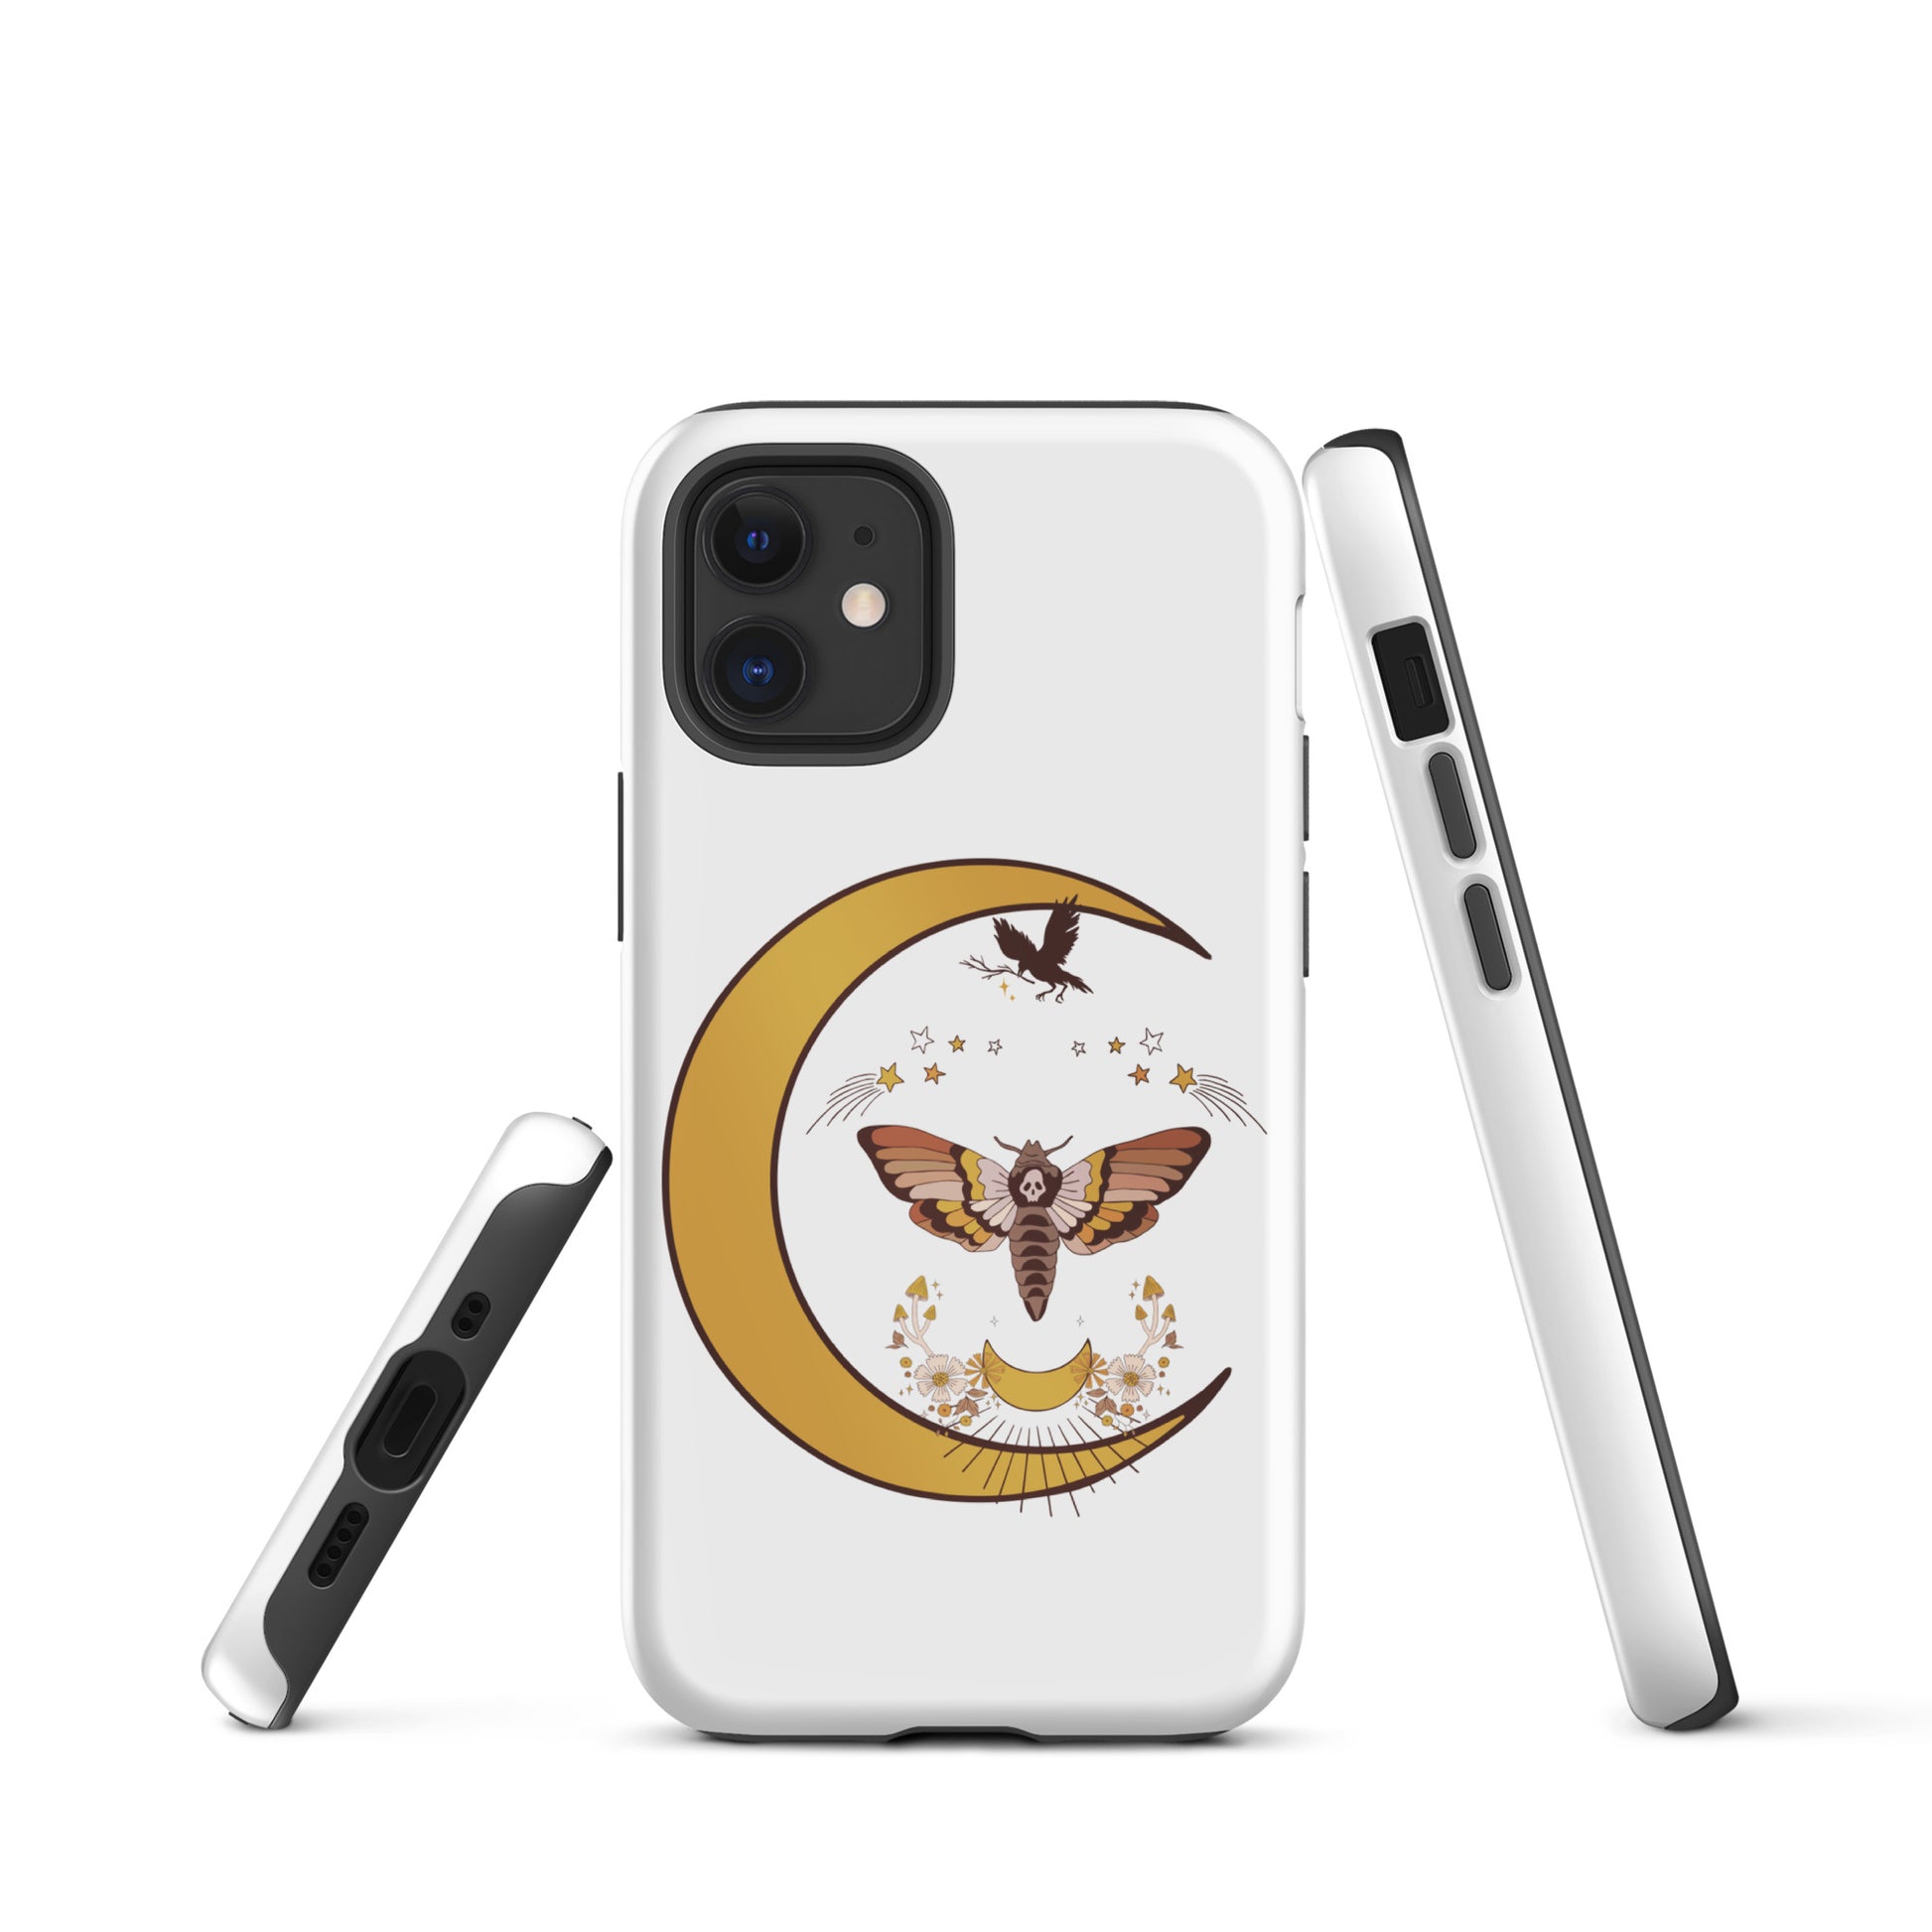 "Moon Moth" Tough iPhone case